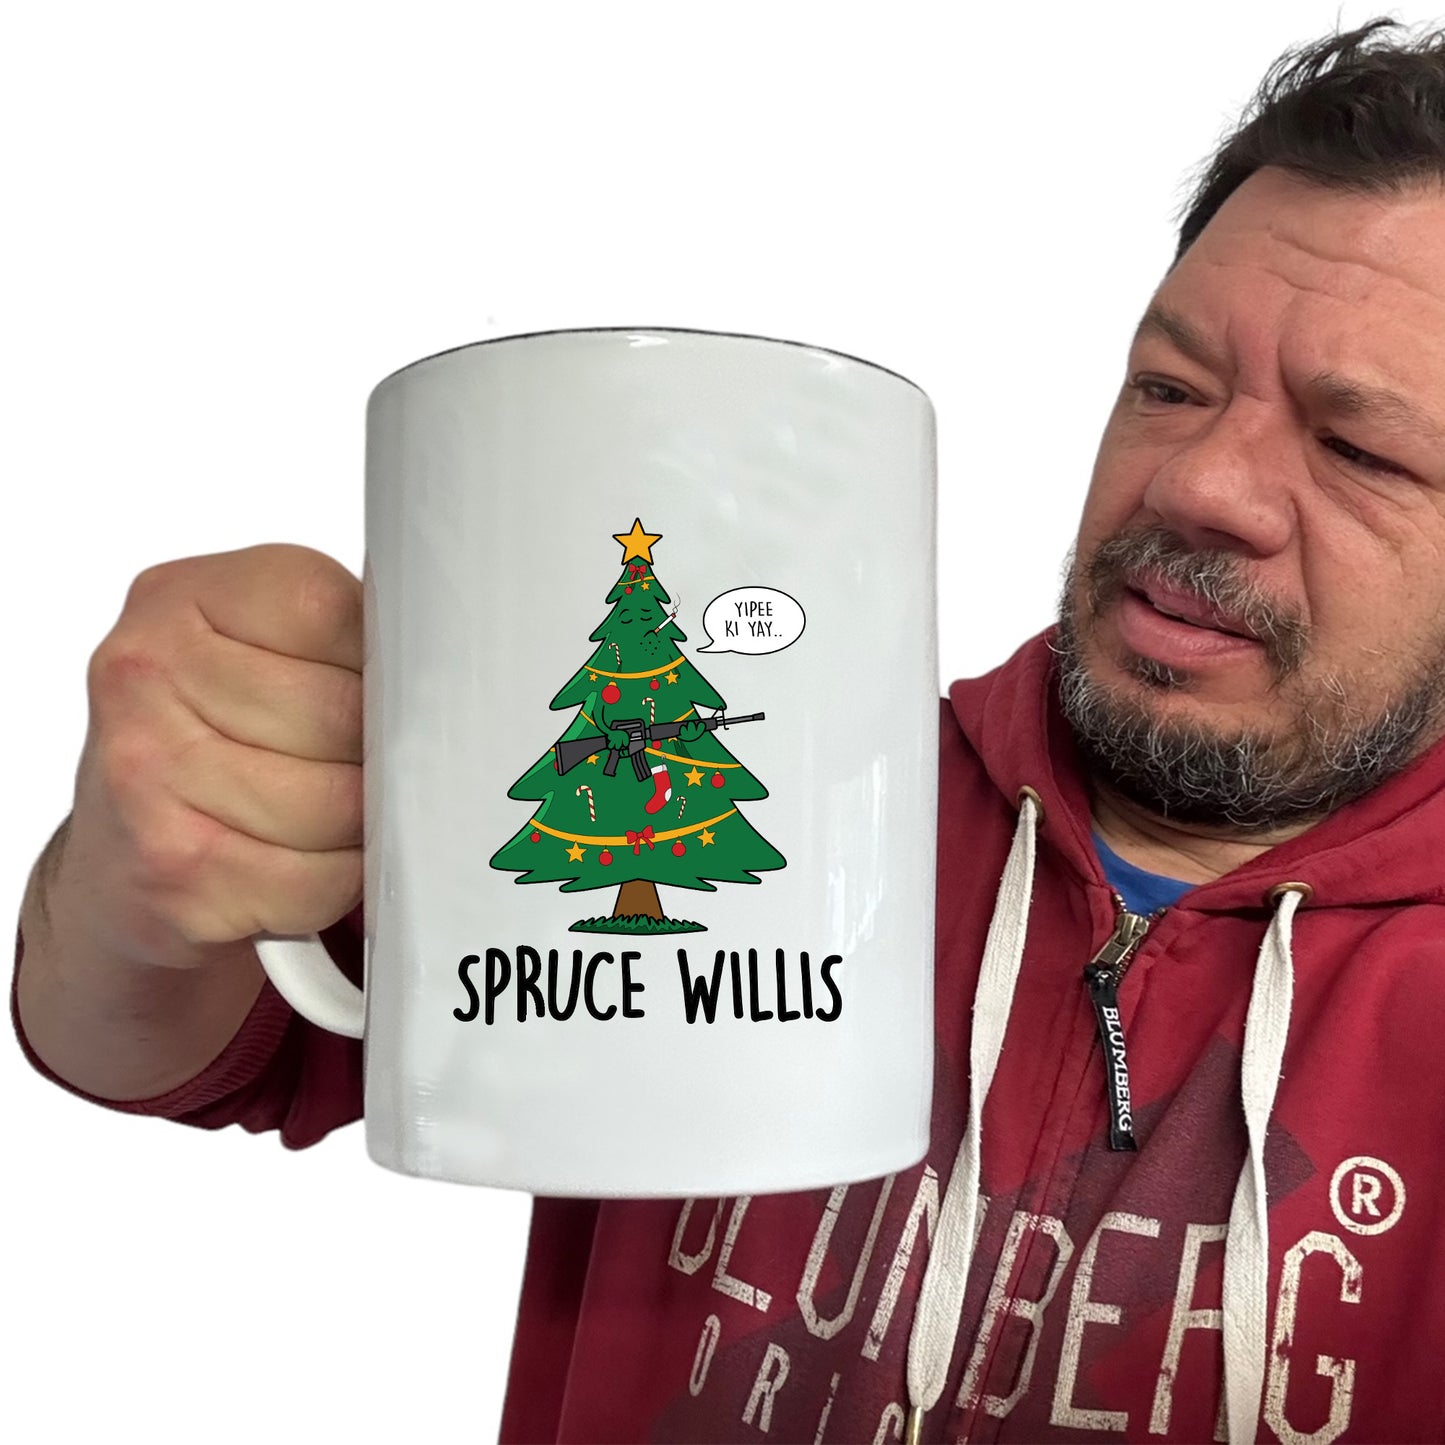 The Christmas Hub - Christmas Xmas Spruce Willis - Funny Giant 2 Litre Mug